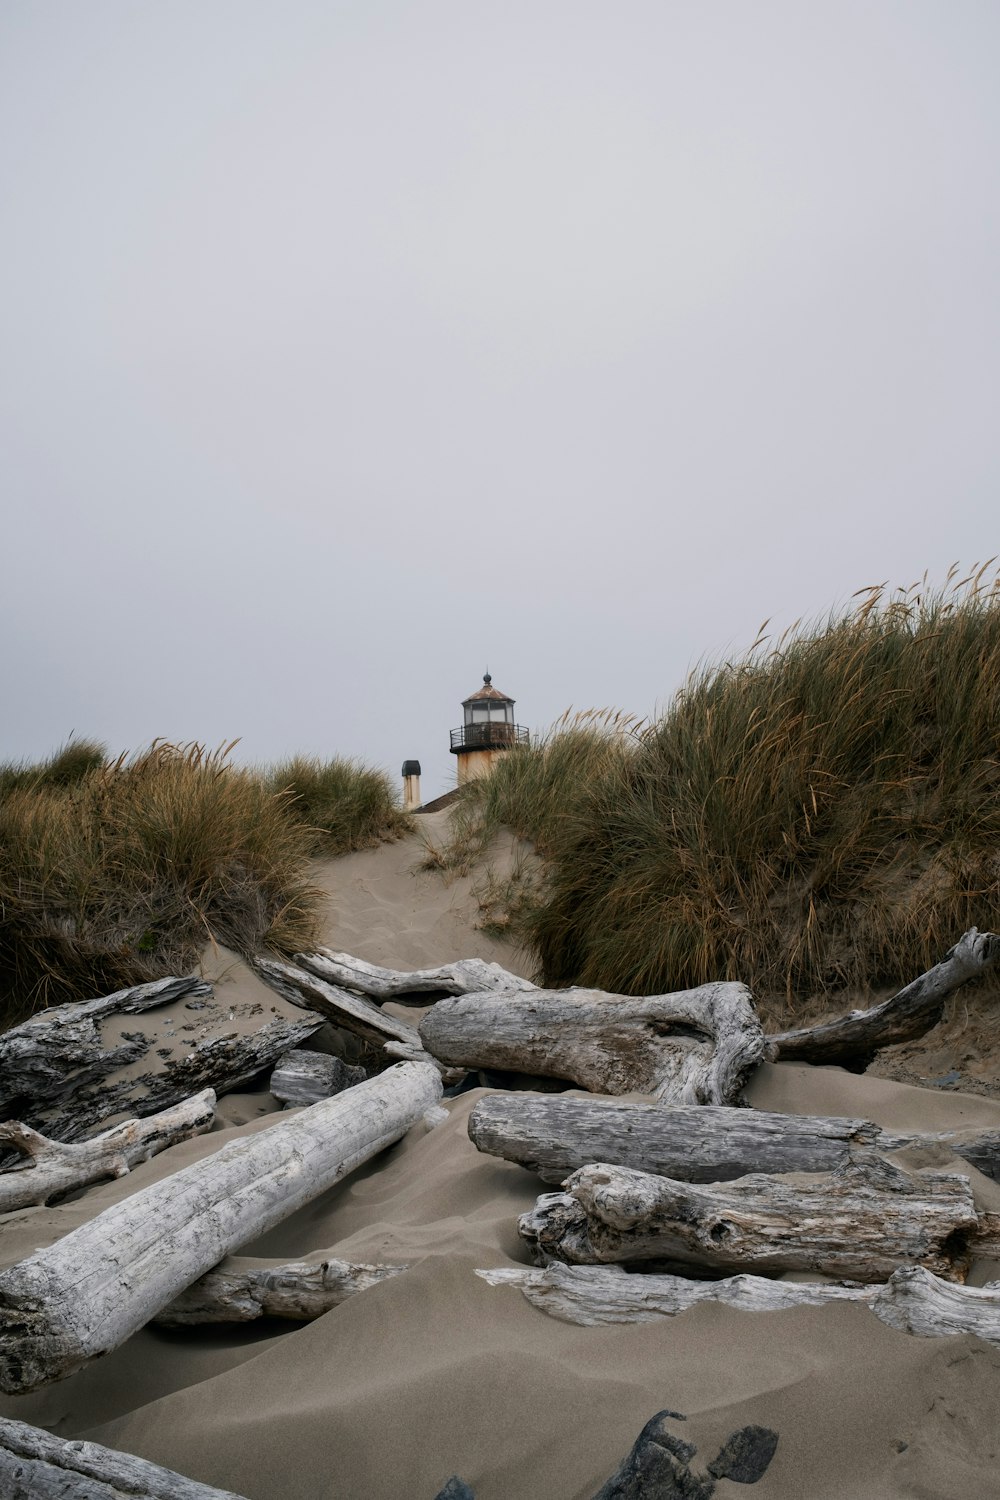 a sandy beach with a lighthouse